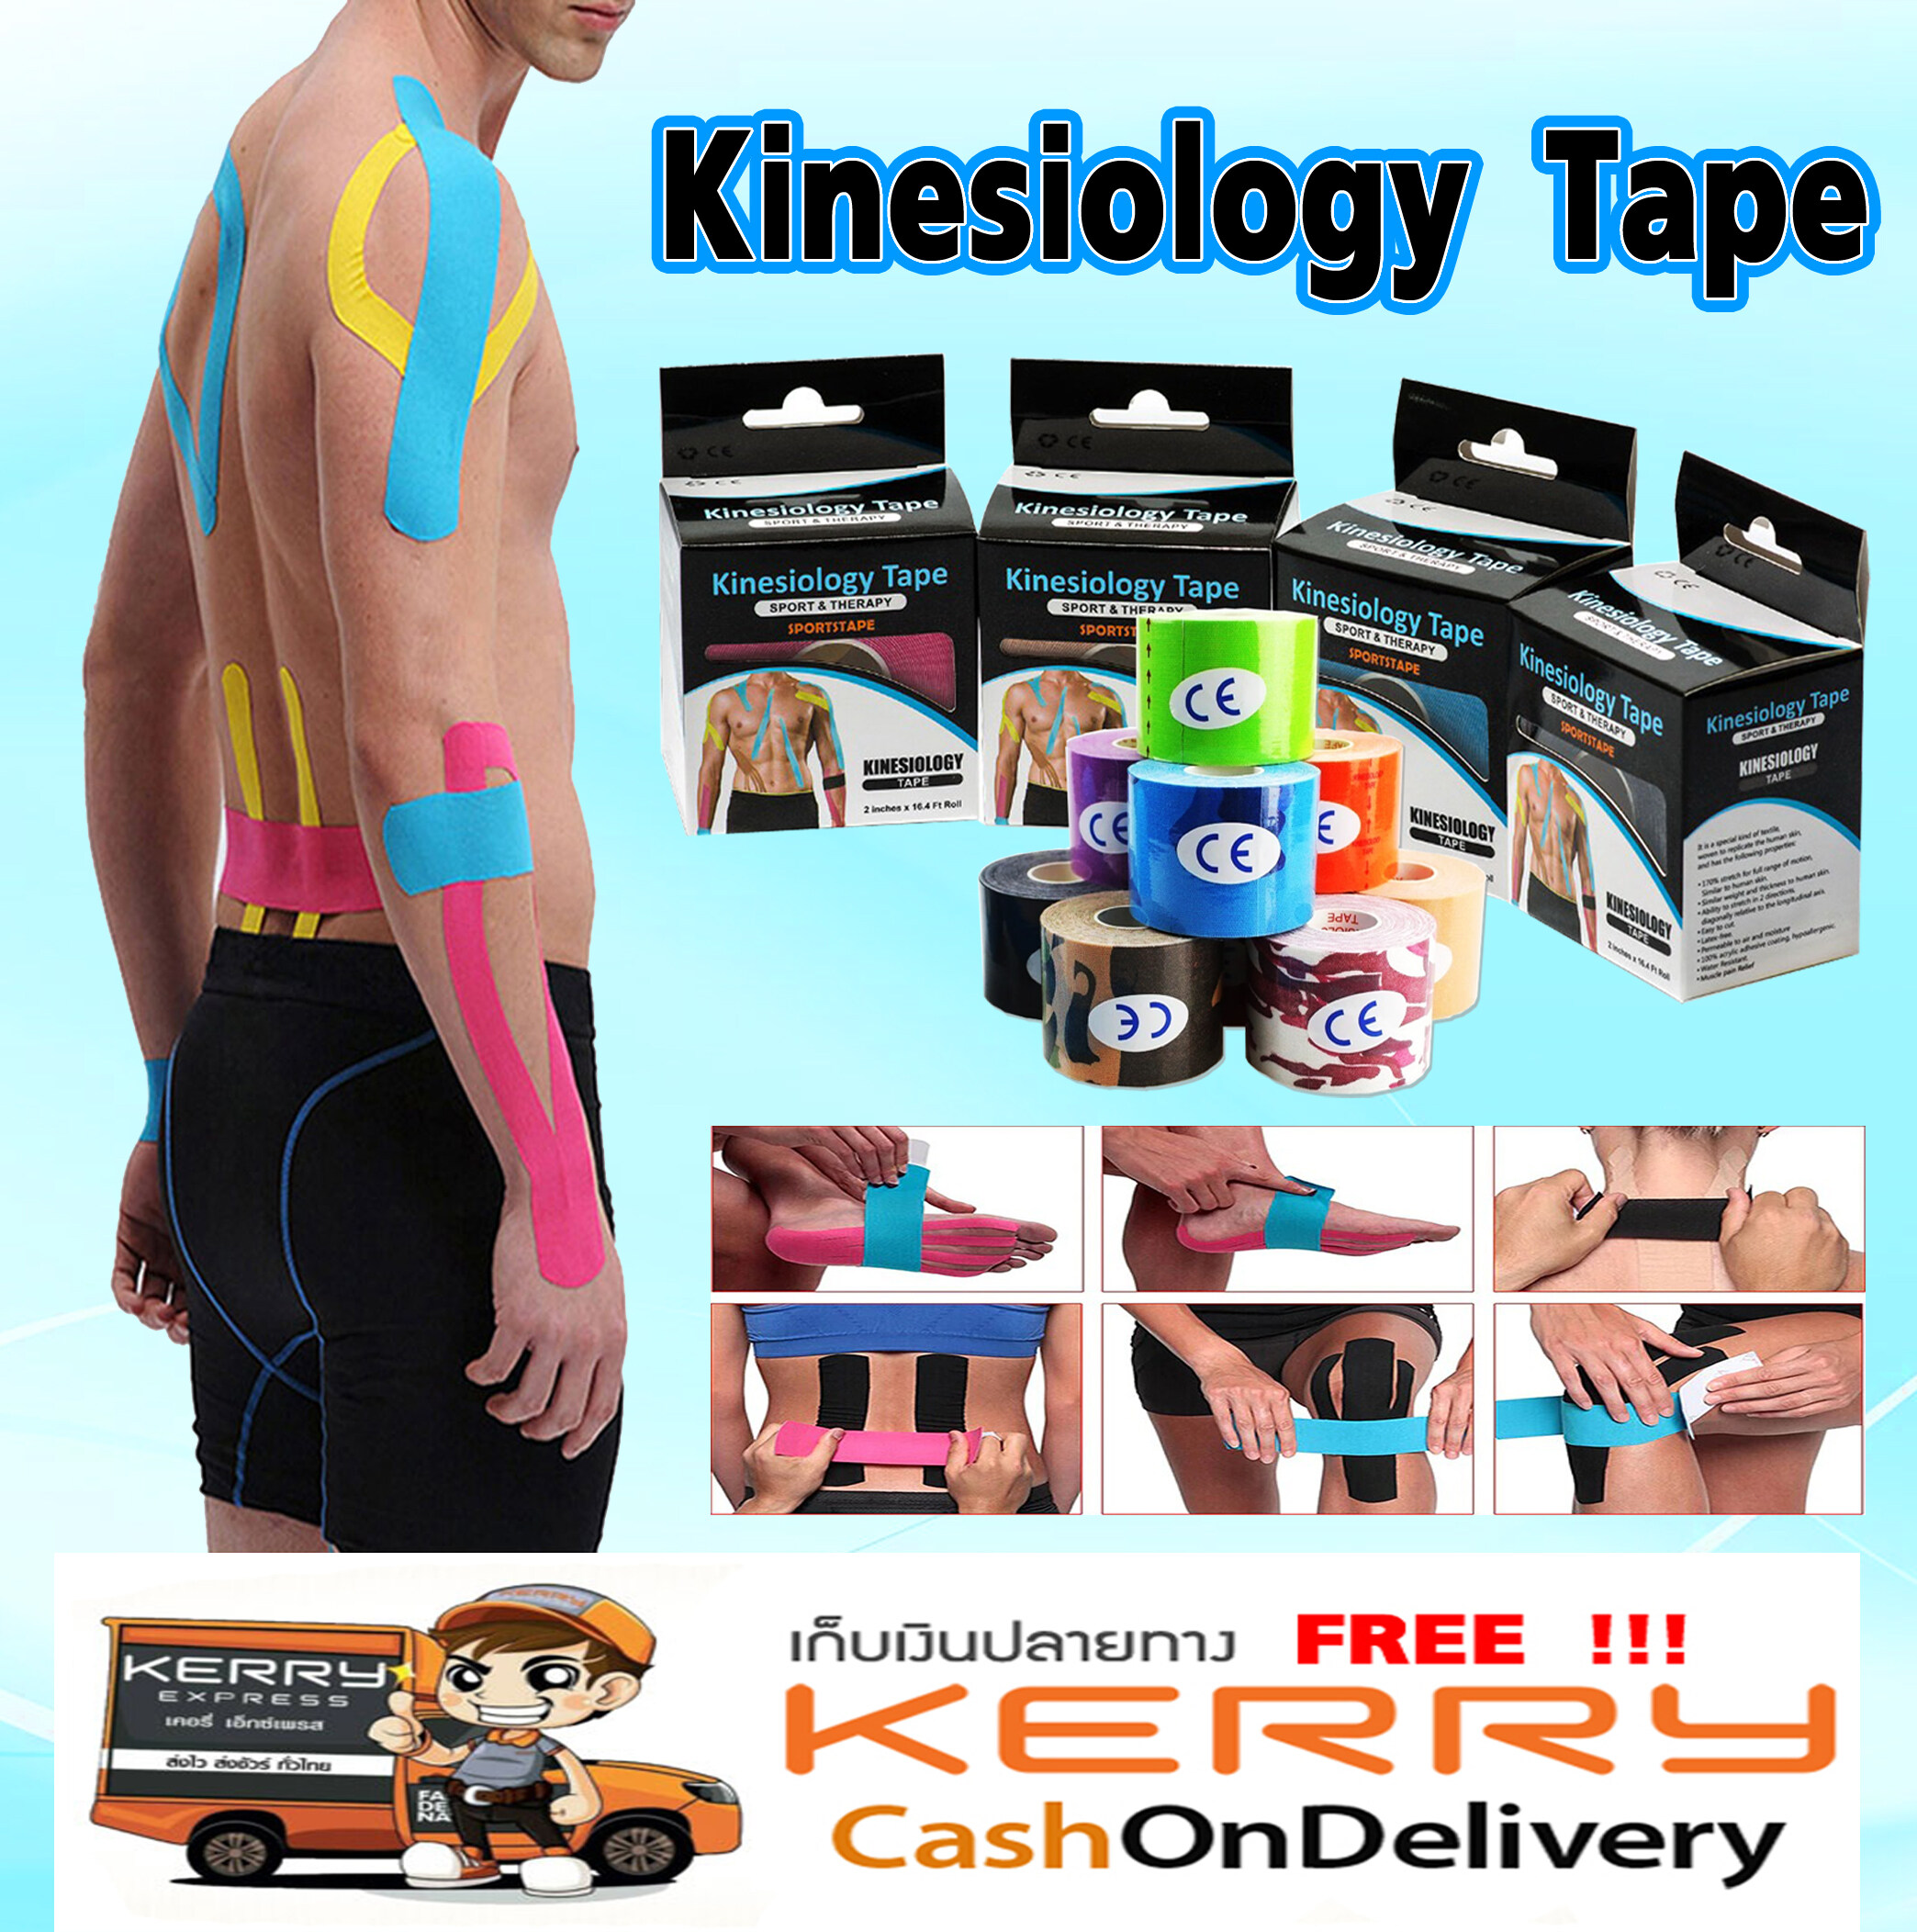 Kinesiology Tape (ไคนิซิโอจี้ เทป) ขนาด 5cm.X5M. เทปบำบัด เทปติดกล้ามเนื้อ เทปพยุงกล้ามเนื้อ เทปยืดหยุ่น ช่วยลดความเจ็บปวด ลดความรุนแรงนักกีฬาที่ได้รับบาดเจ็บ บรรเทาอาการปวดและรองรับกล้ามเนื้อและข้อต่อ